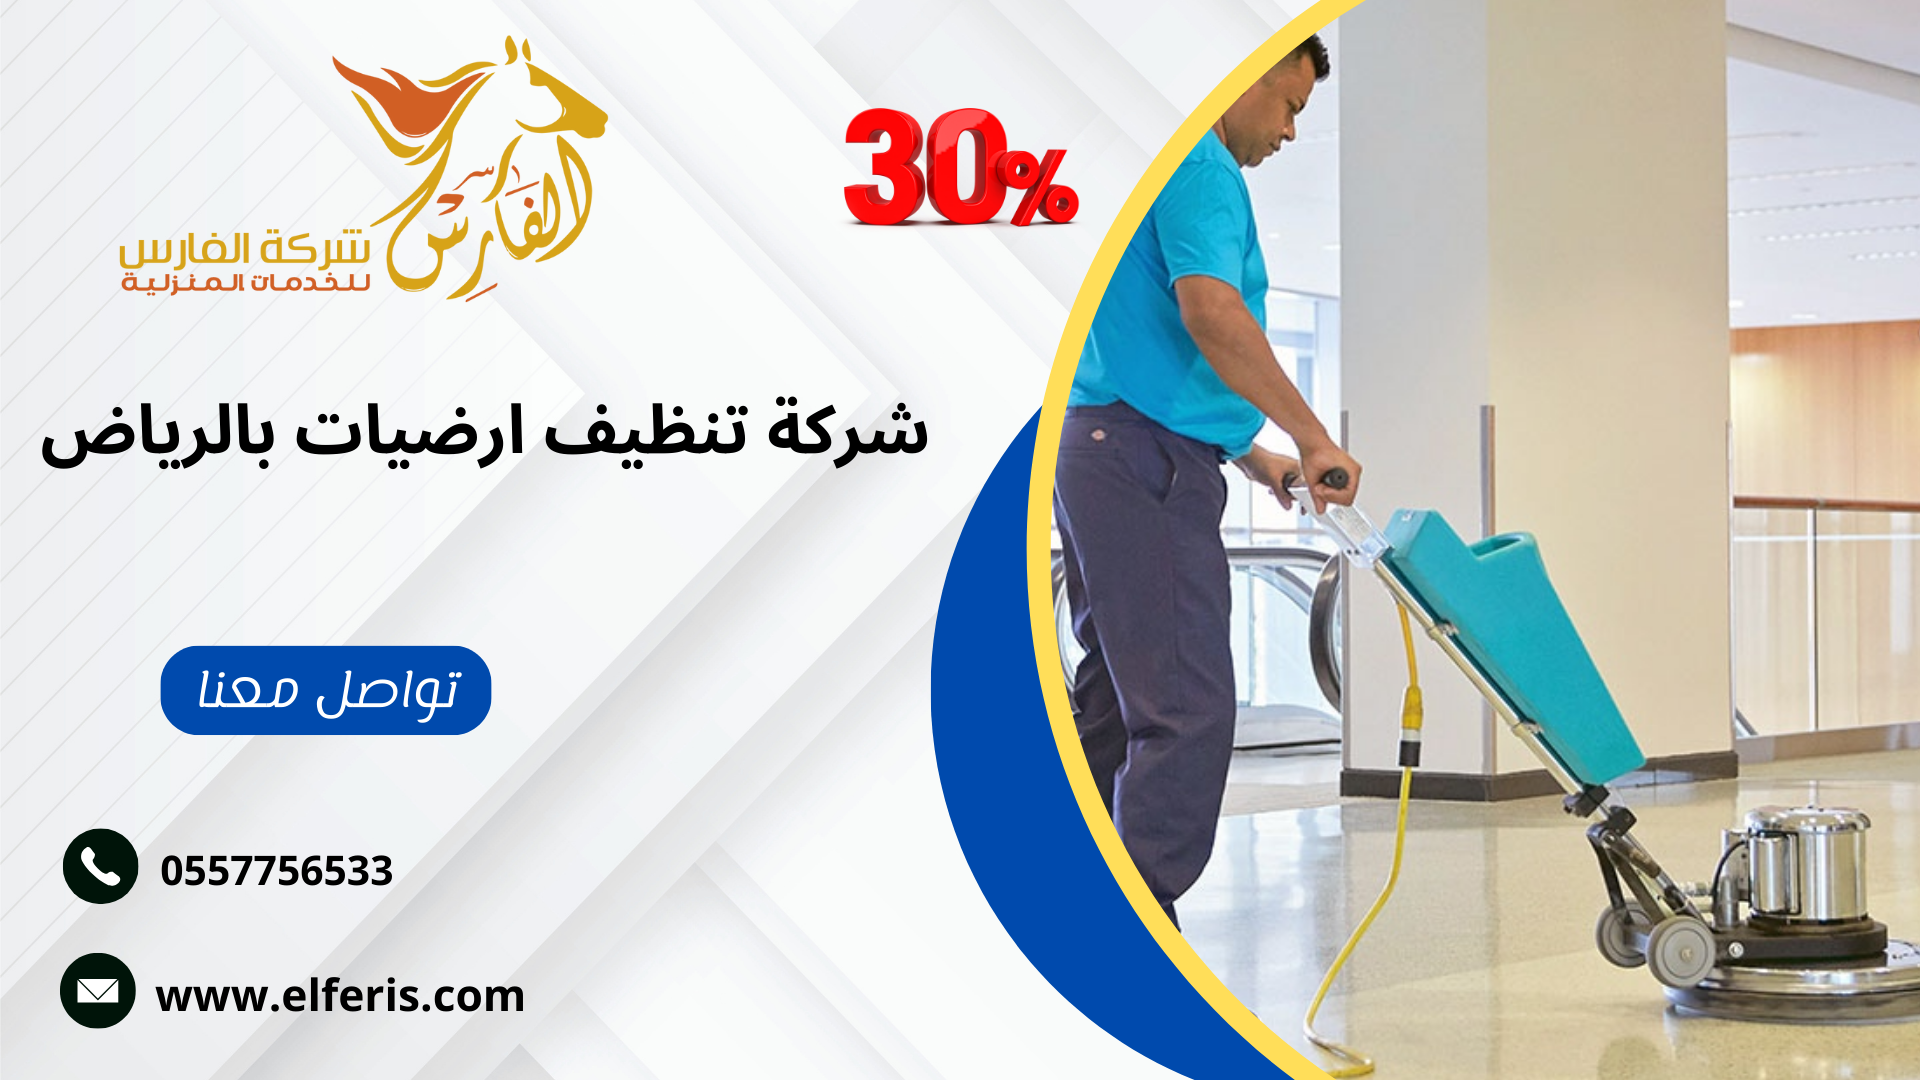 خصومات تقدمها شركة الفارس للخدمات المنزلية خصم 30% لكل العملاء الجدد 